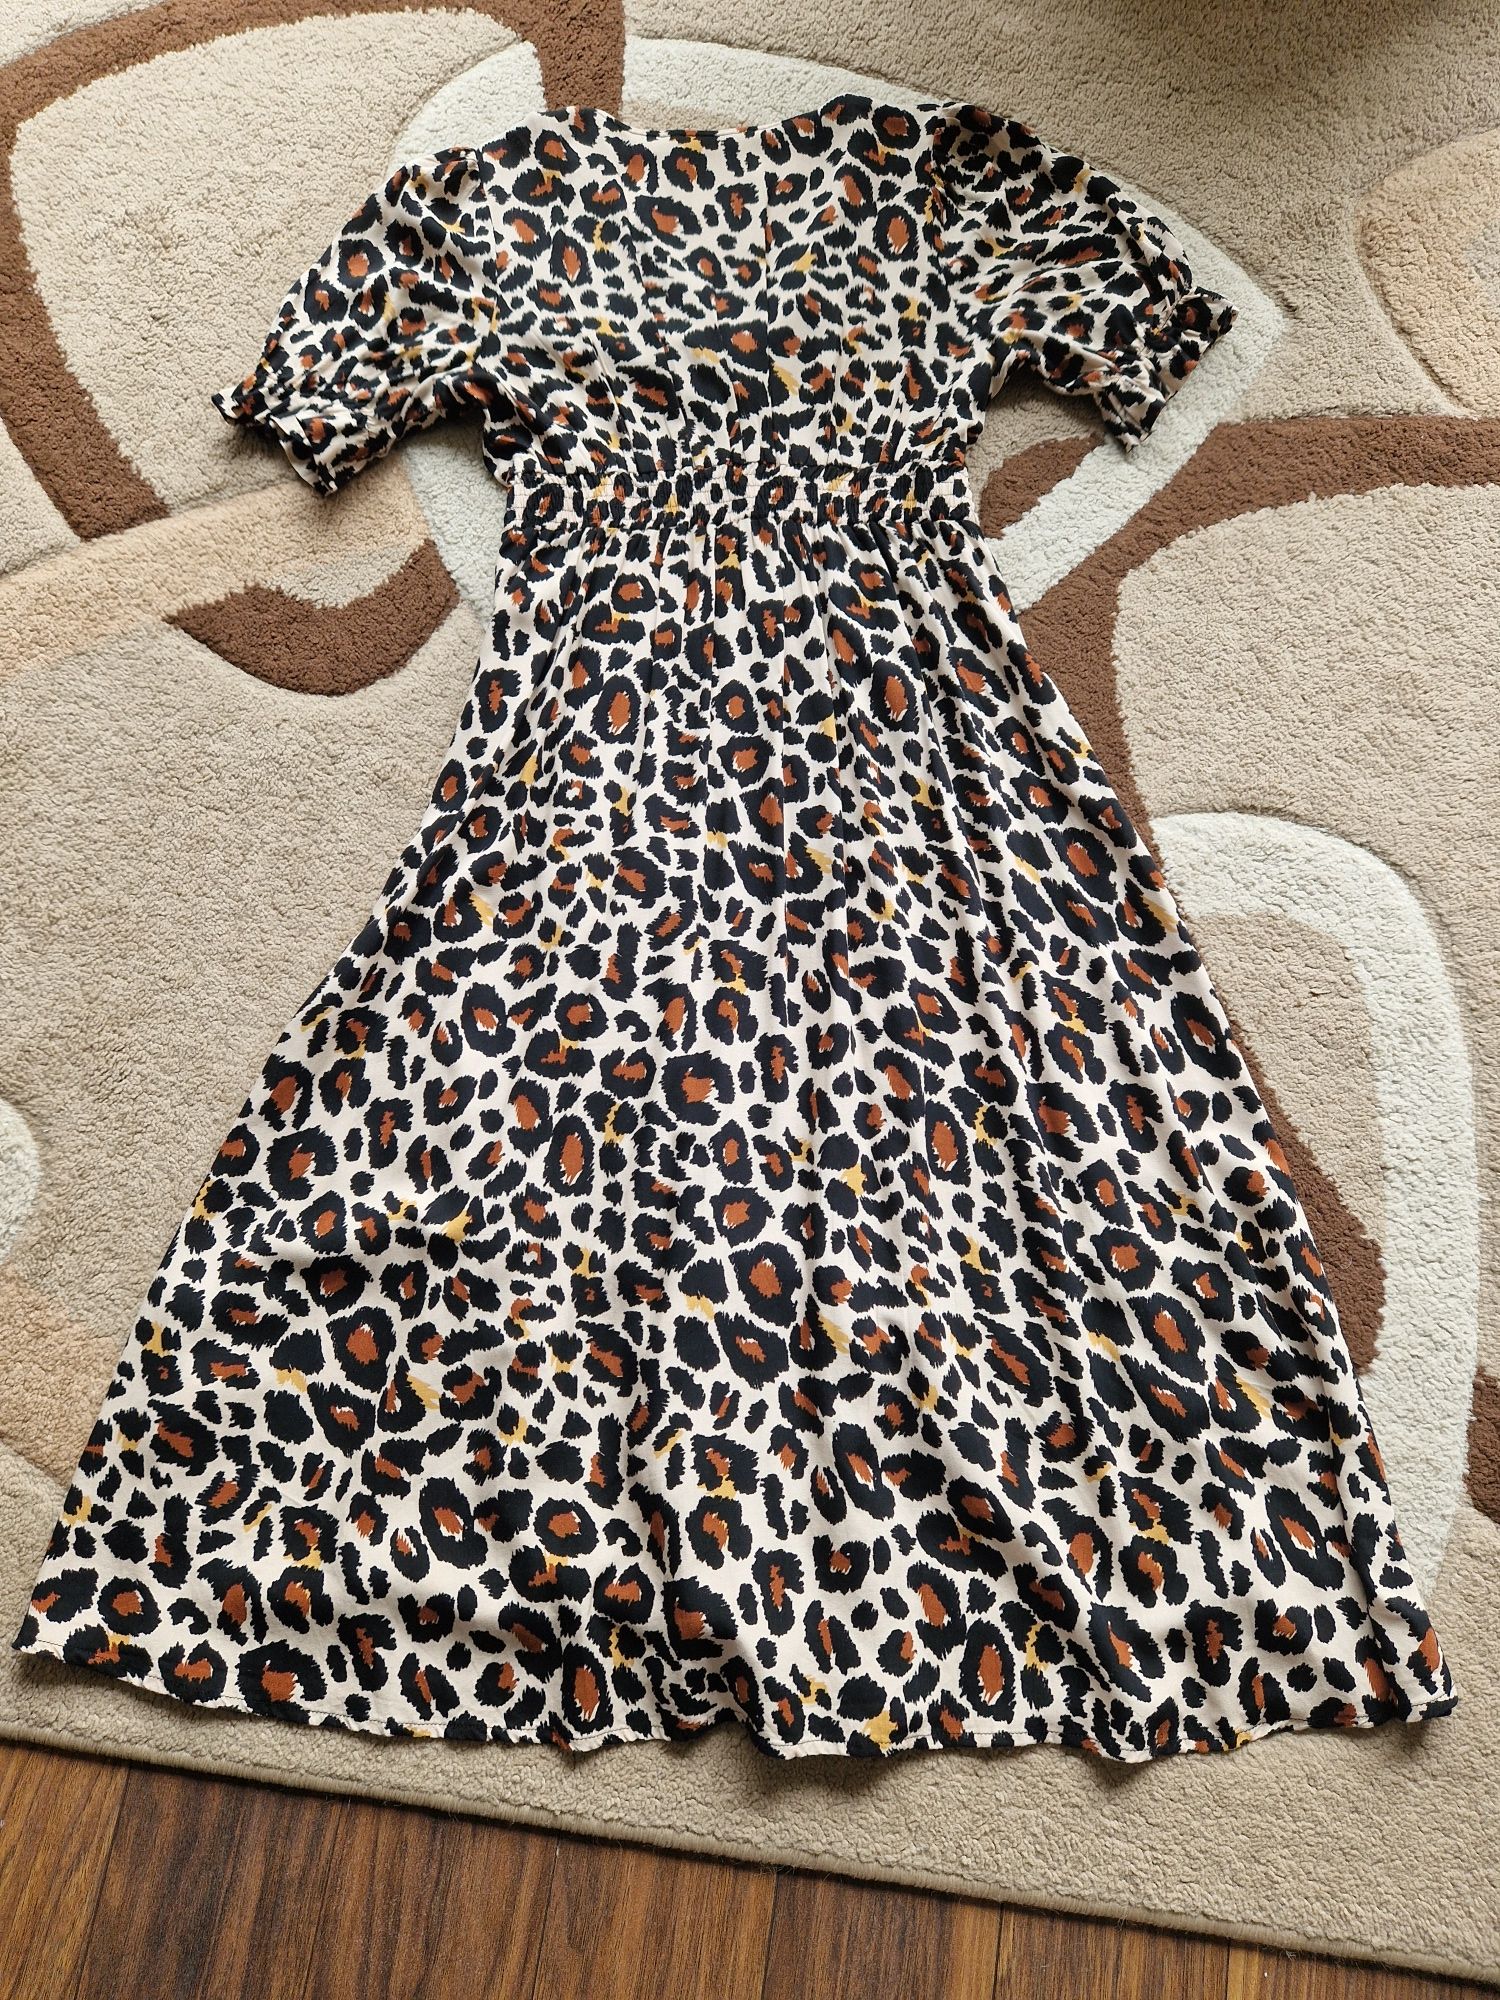 Дамска стилна рокля, размер 38, леопардова рокля размер 36